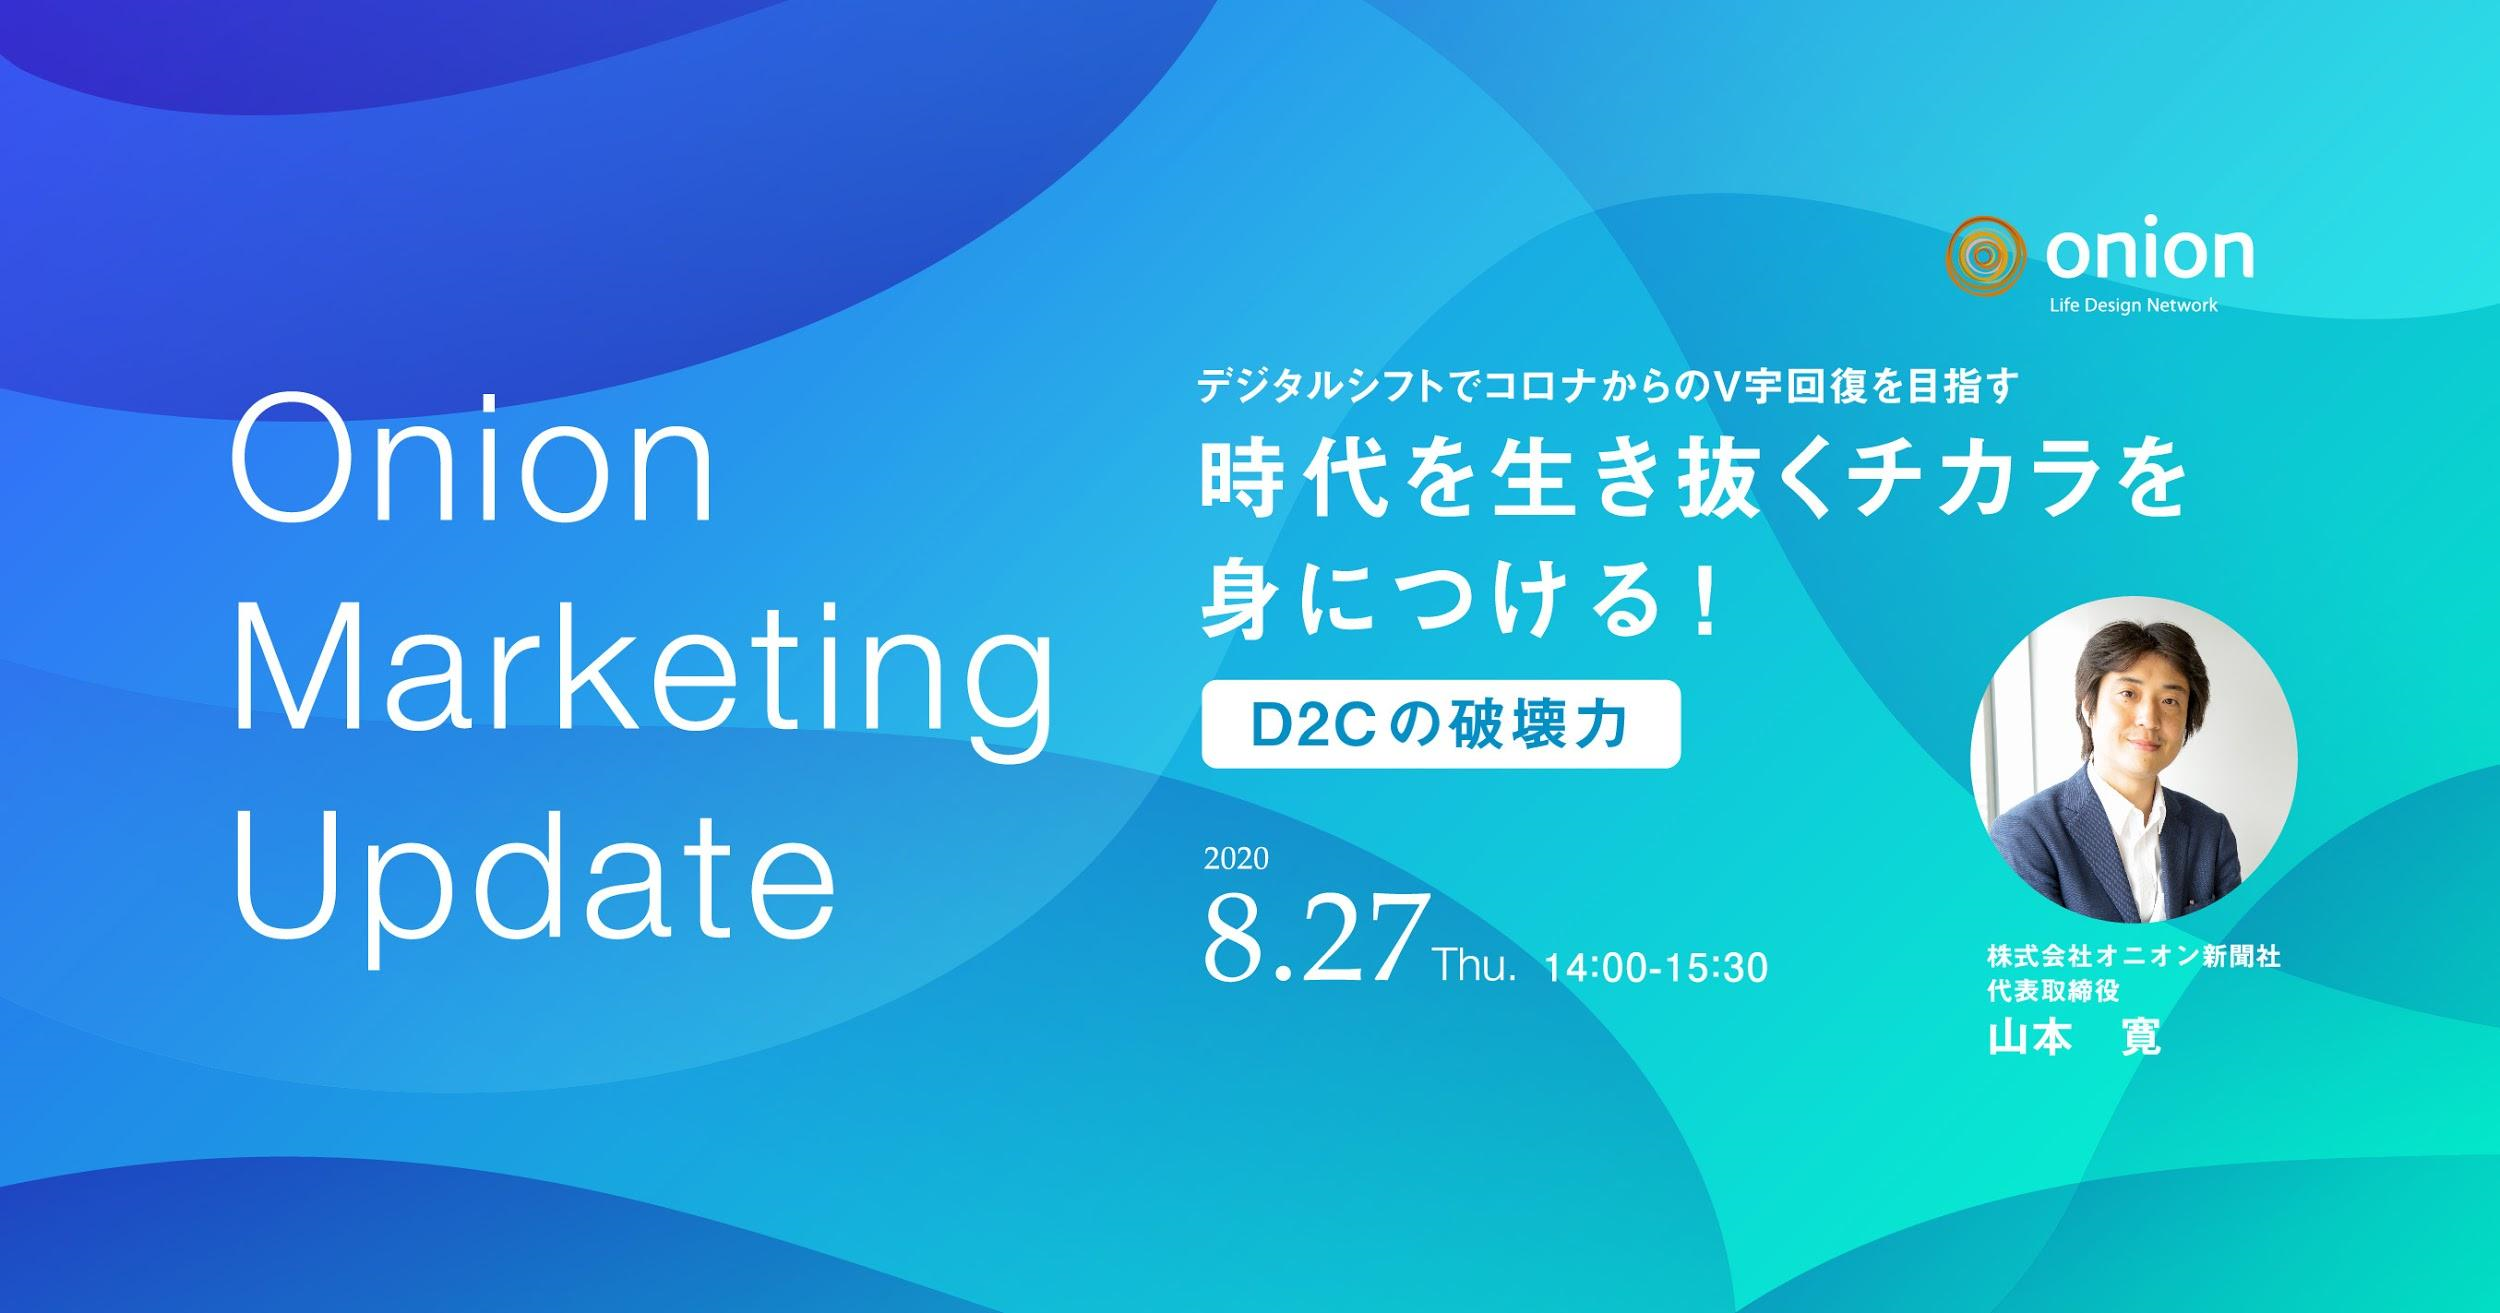 Onion Marketing Update オンラインセミナーを開催 8月27日